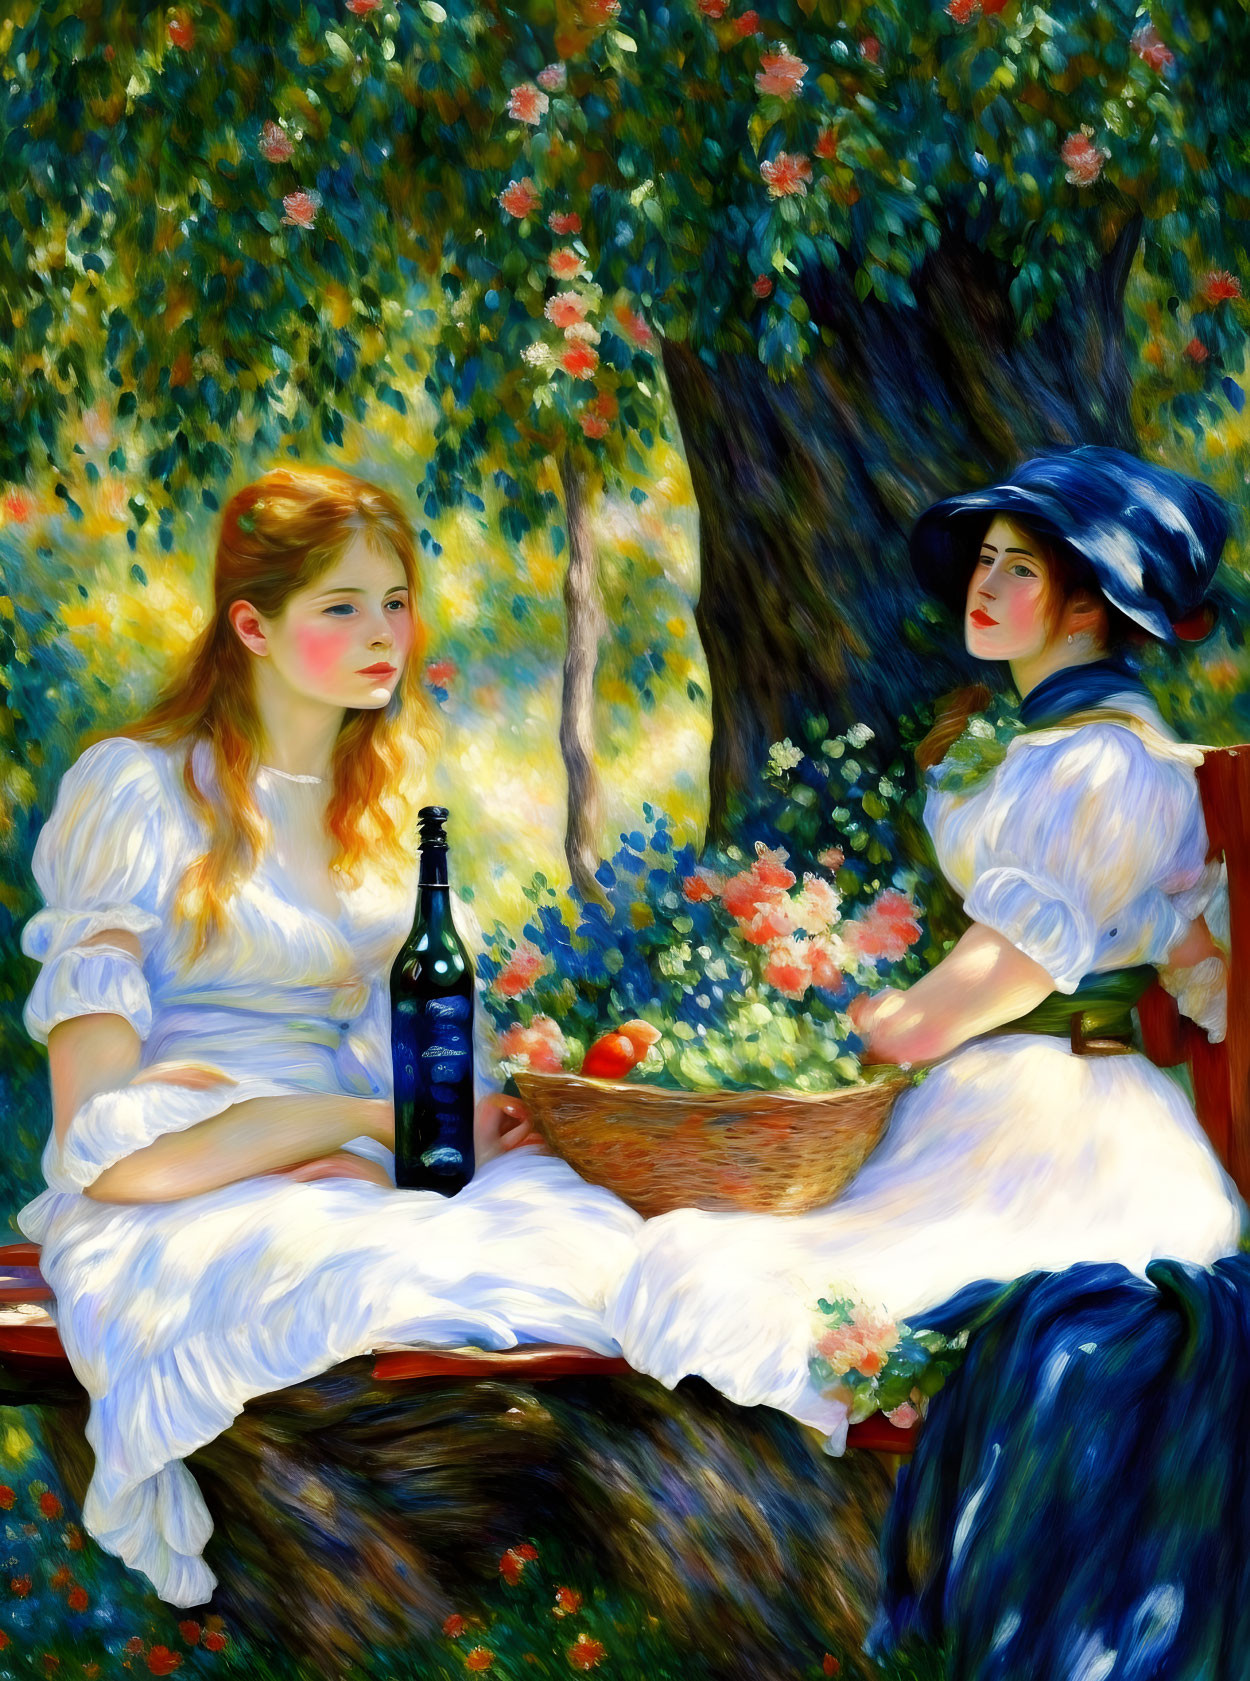 Women and Wine